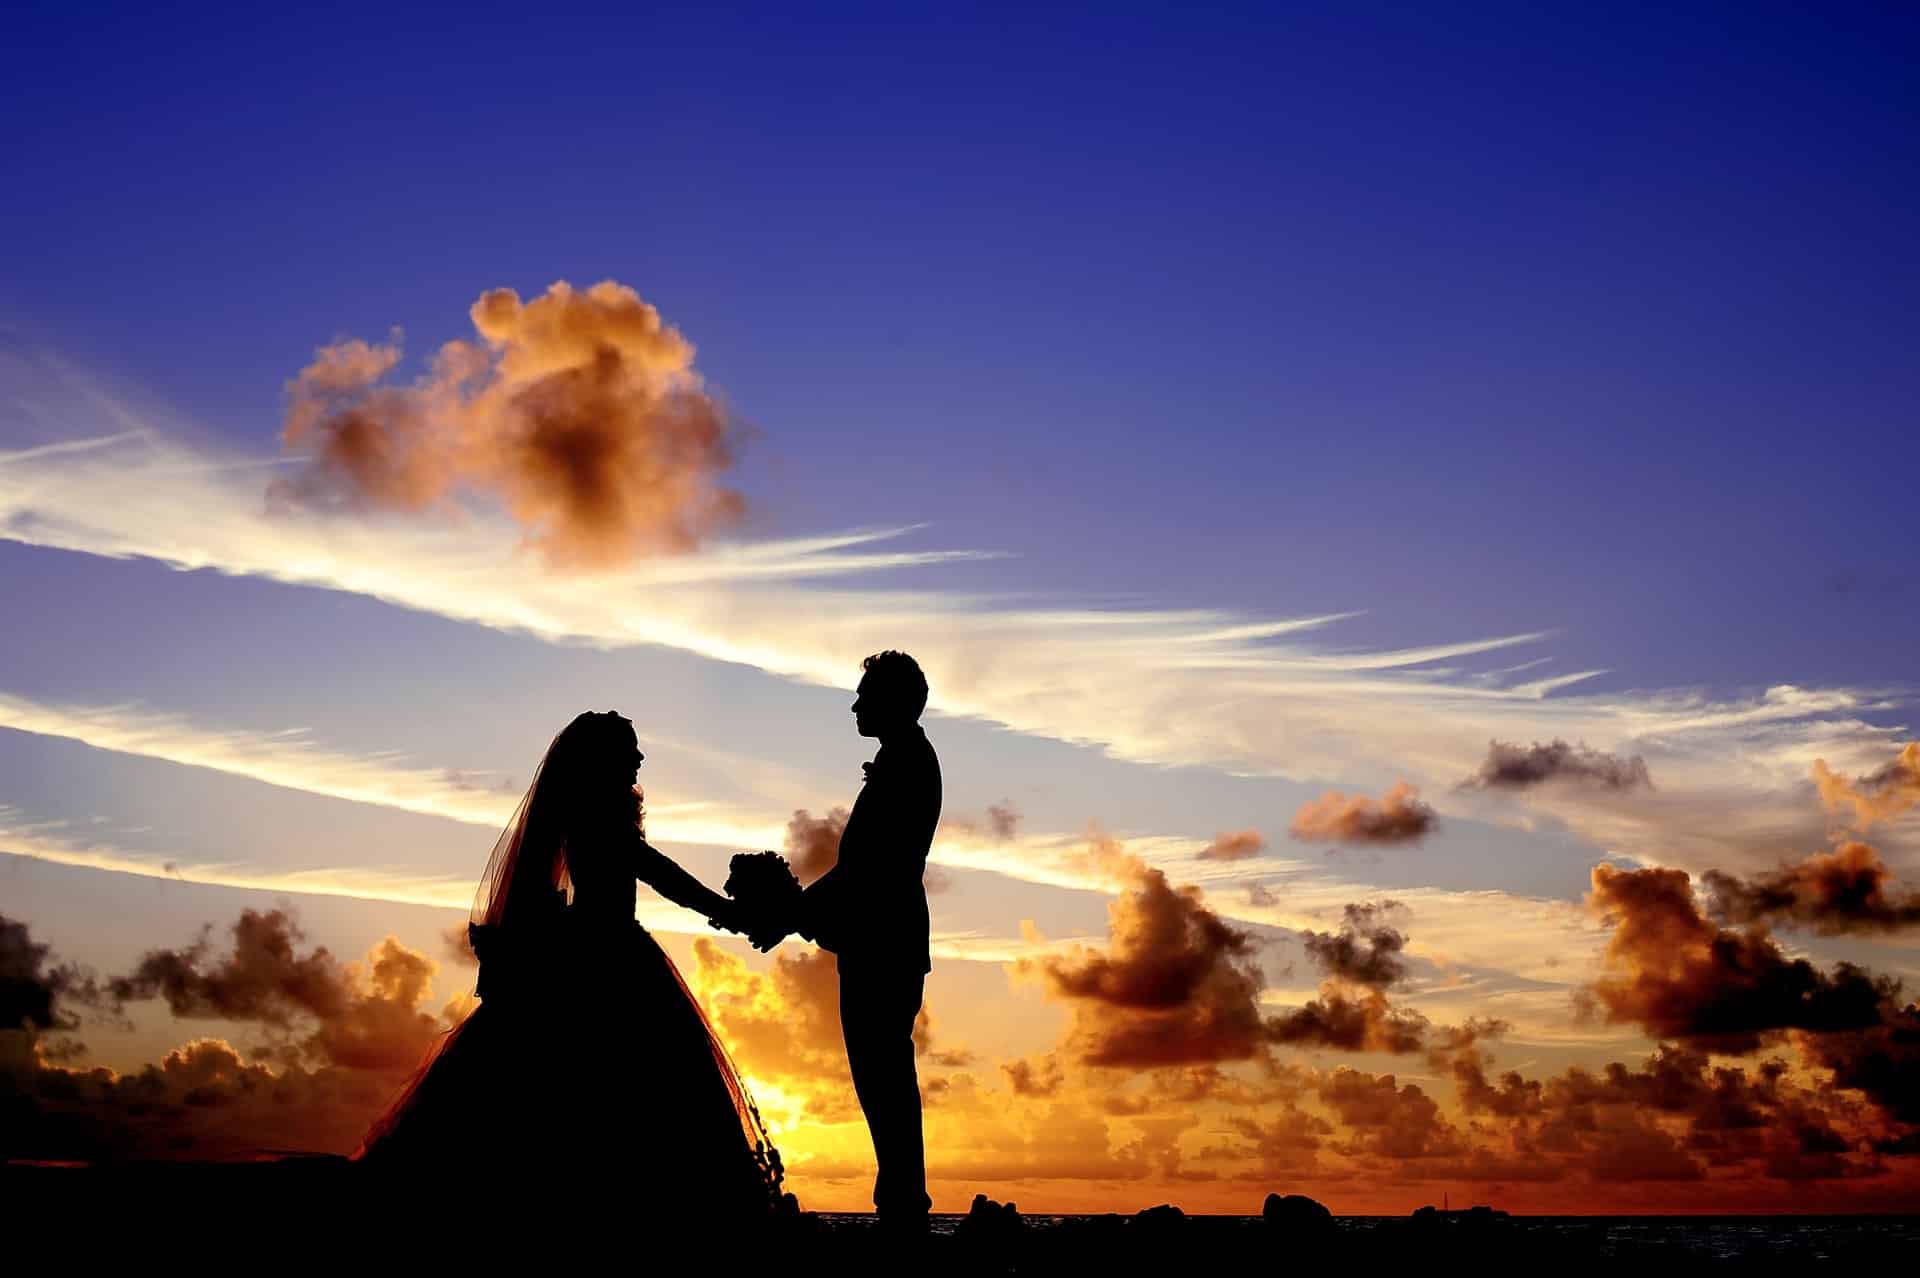 Nordseeinseln - Hochzeitspaar im Sonnenuntergang an der Nordsee